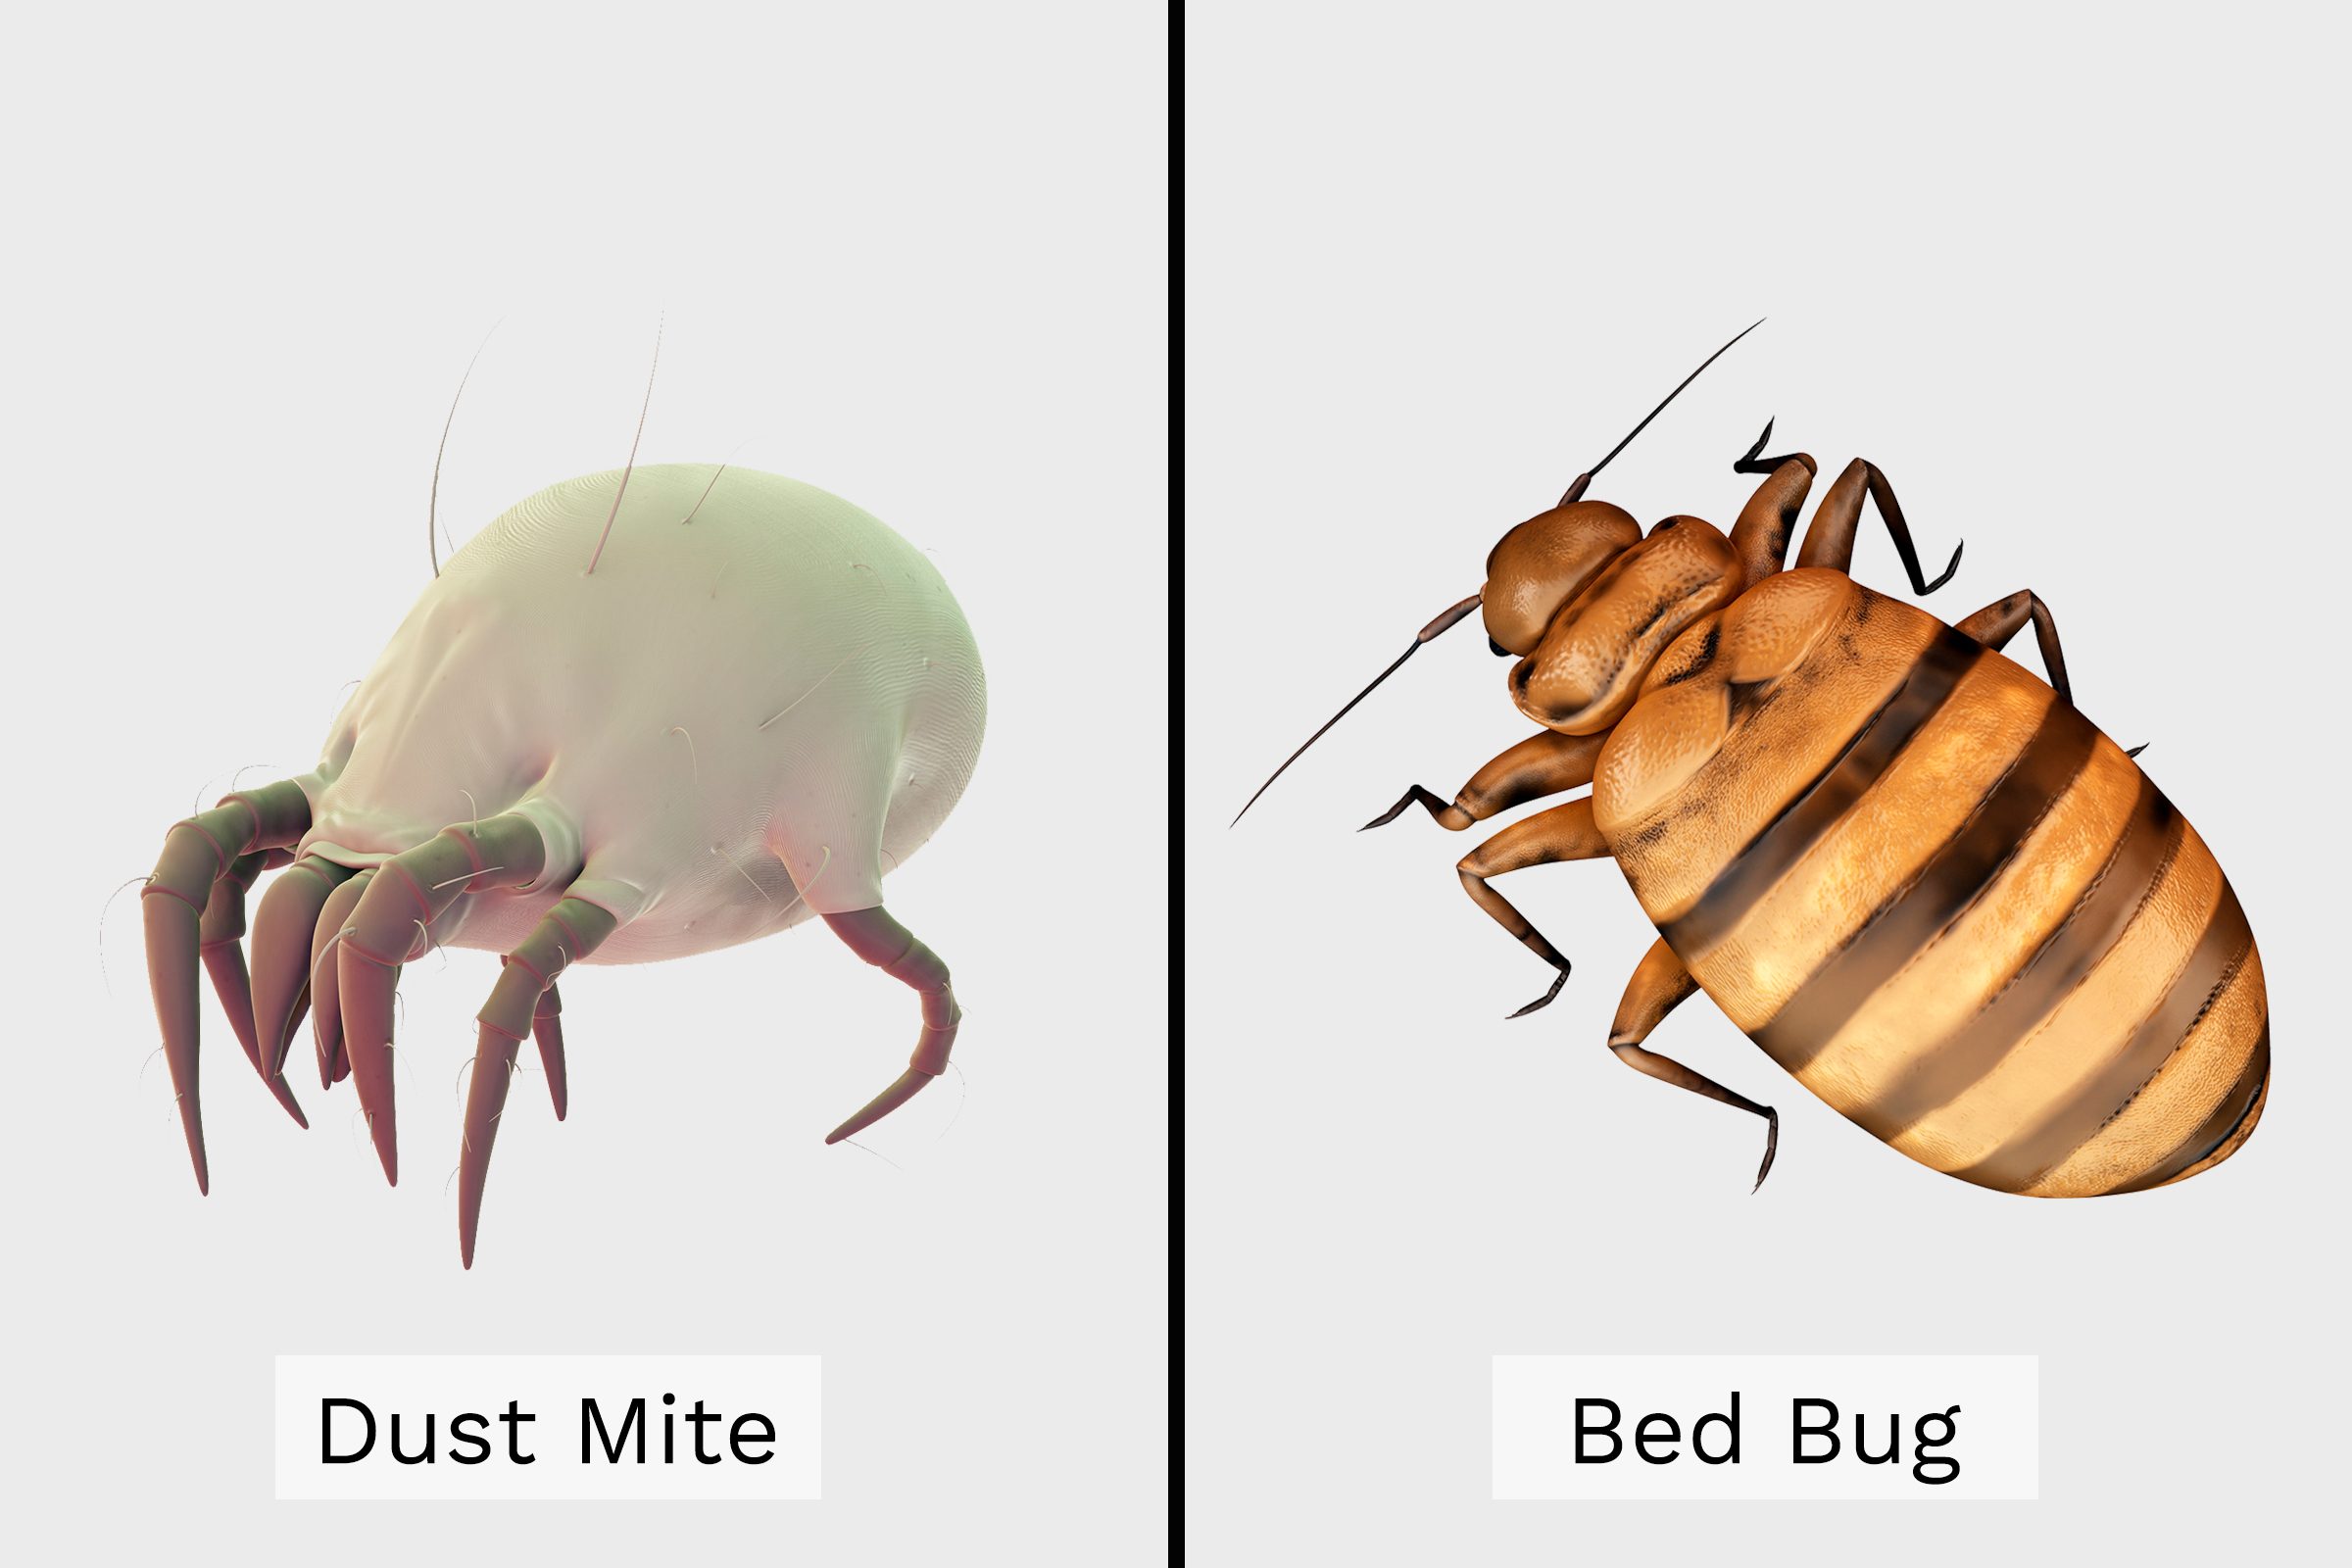 dust mites bites